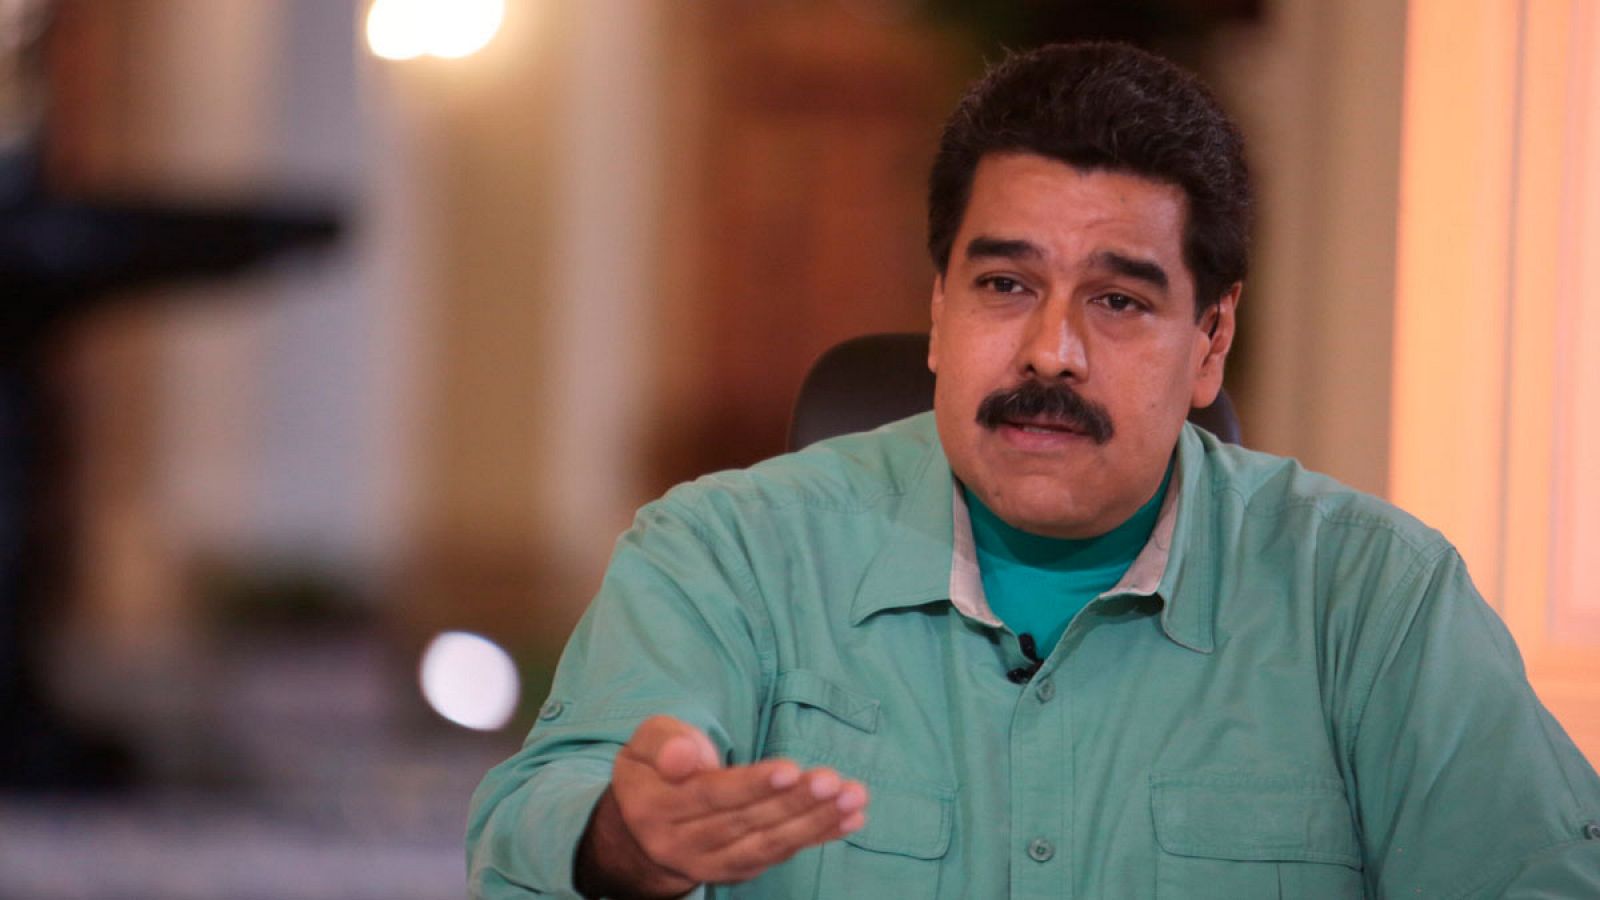 El presidente de Venezuela participa en su programa de televisión "En Contacto con Maduro".